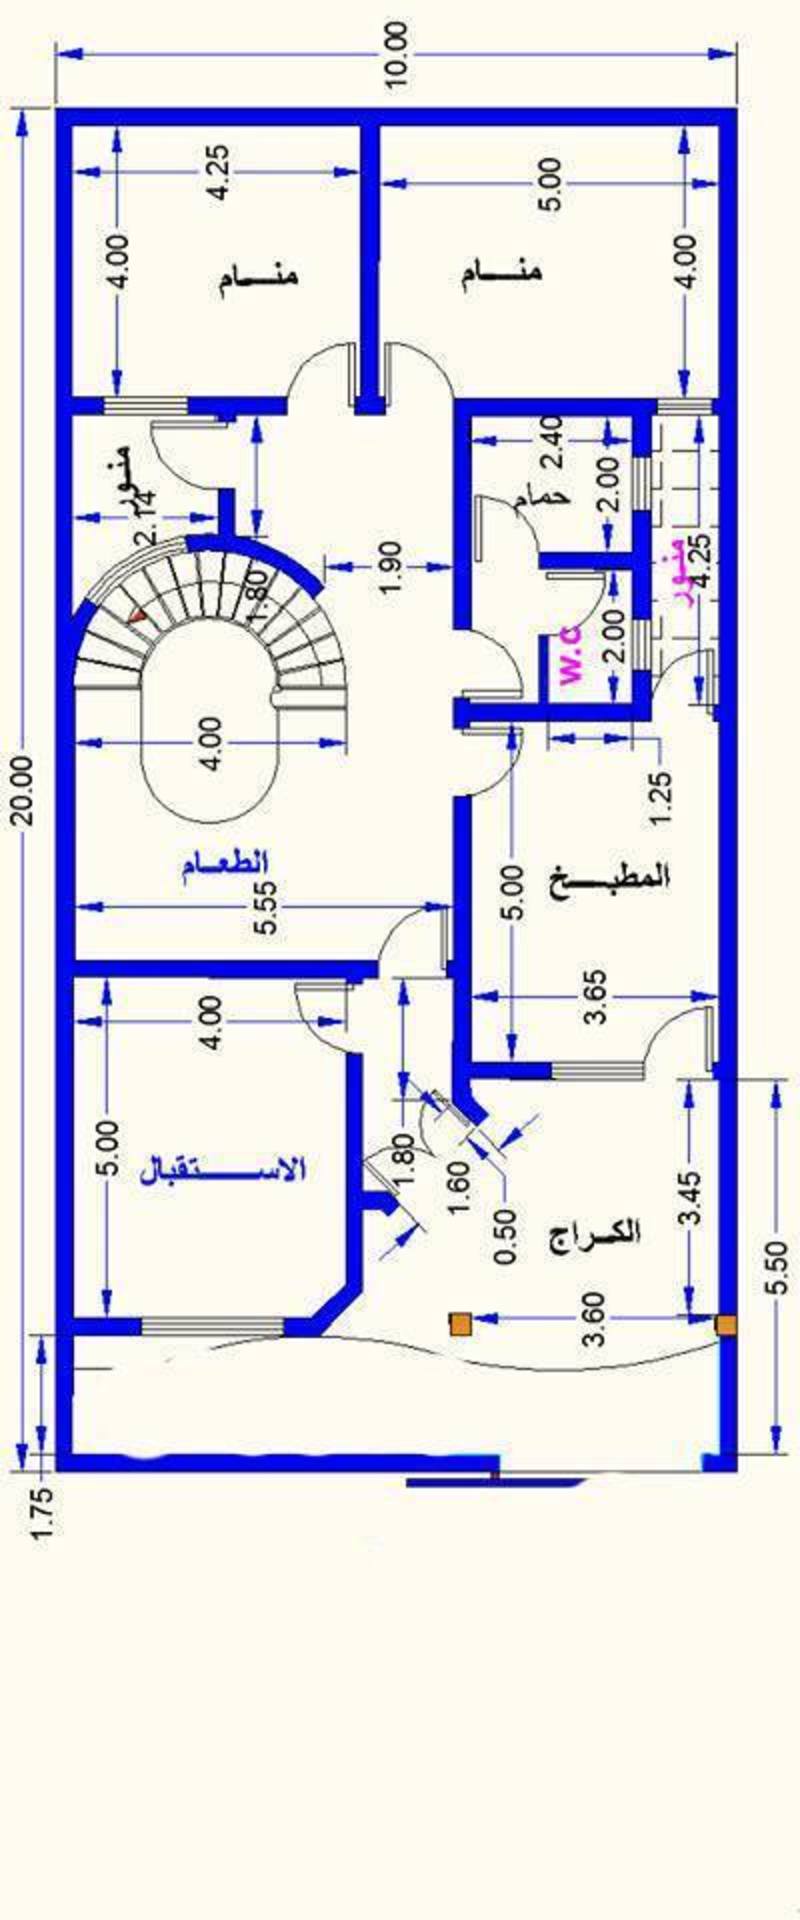 خرائط منازل عراقية 200 م خرائط منازل عراقية 200 متر تصماميم